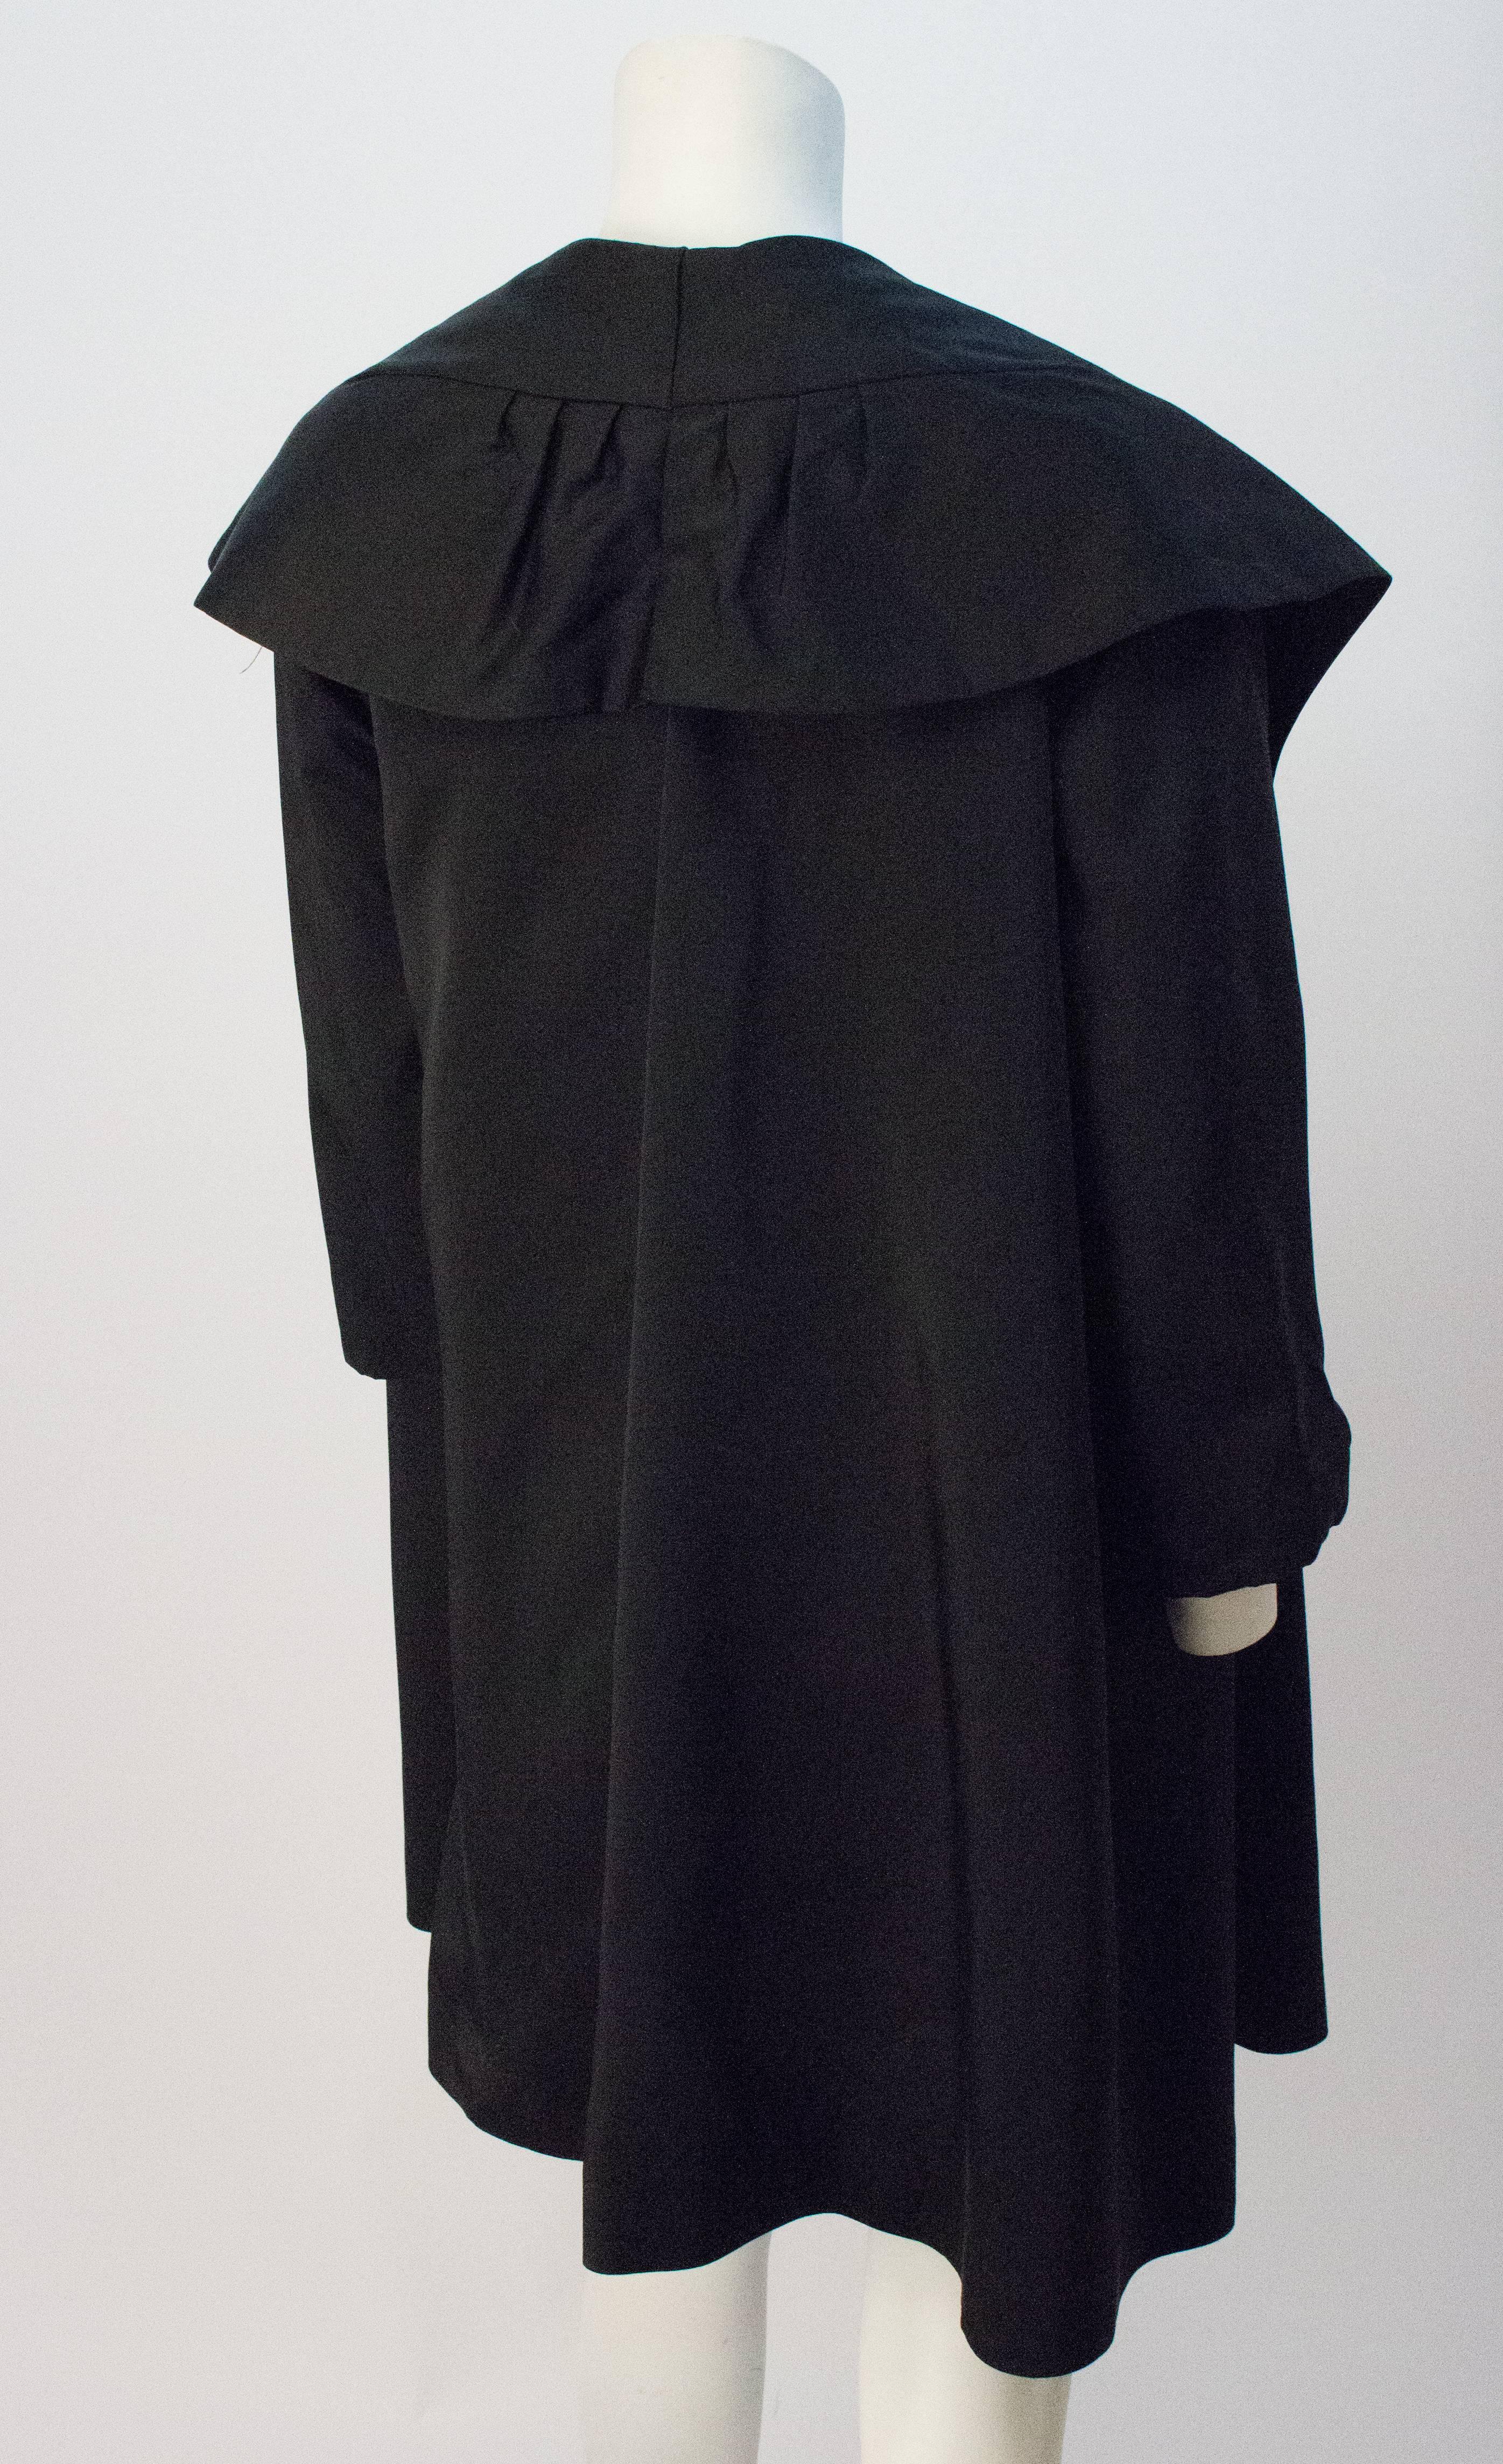 black satin sheath dress